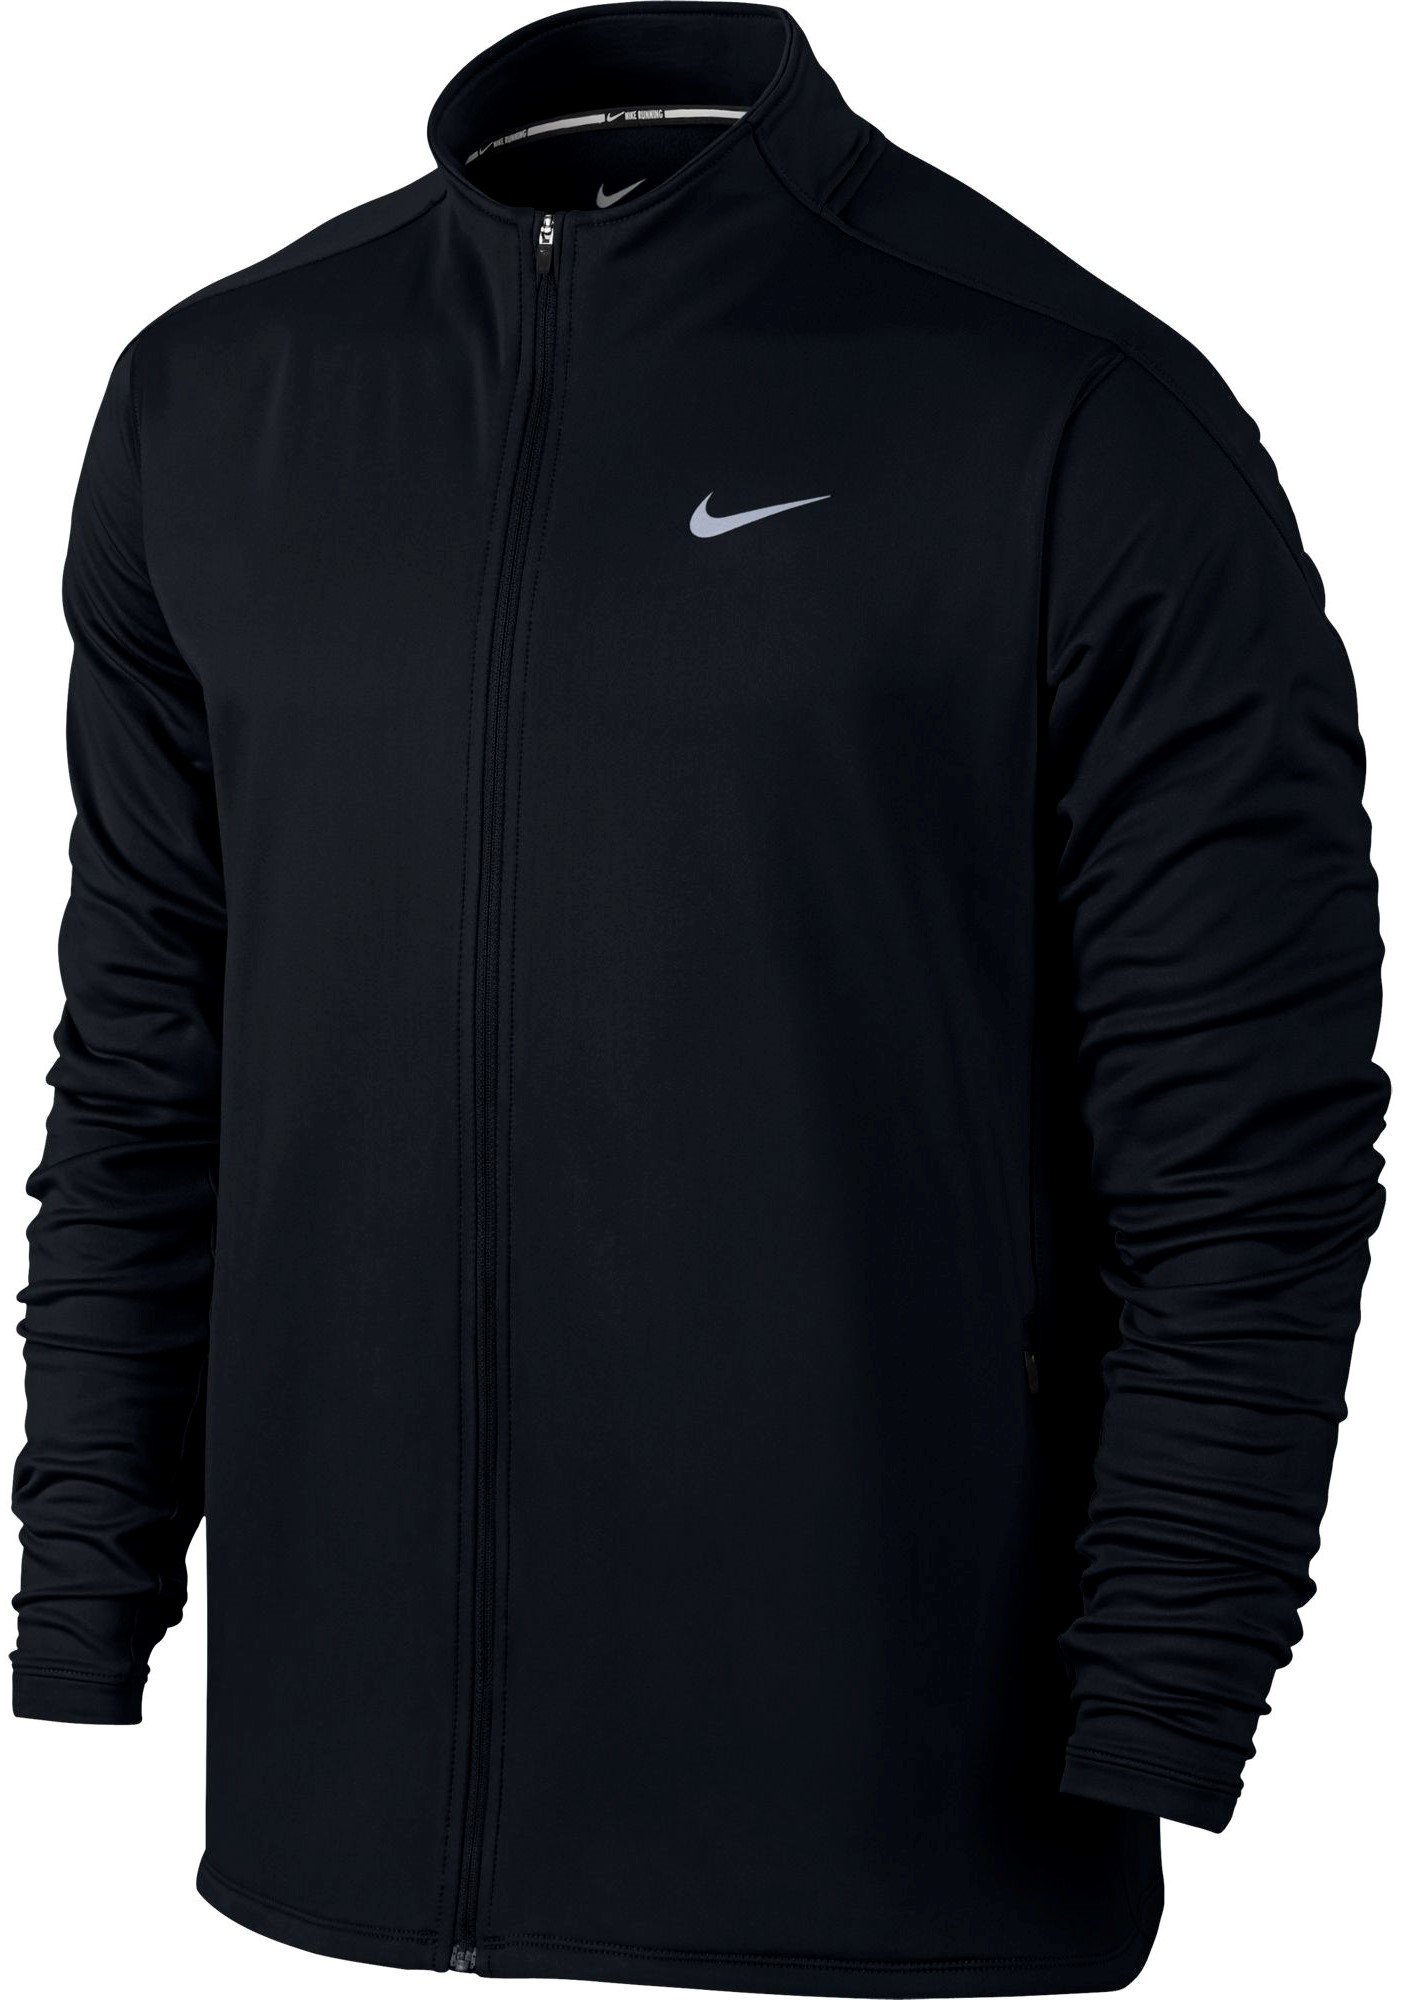 Купить куртку Nike Dri-Fit Thermal Full Zip | Интернет-магазин RunLab